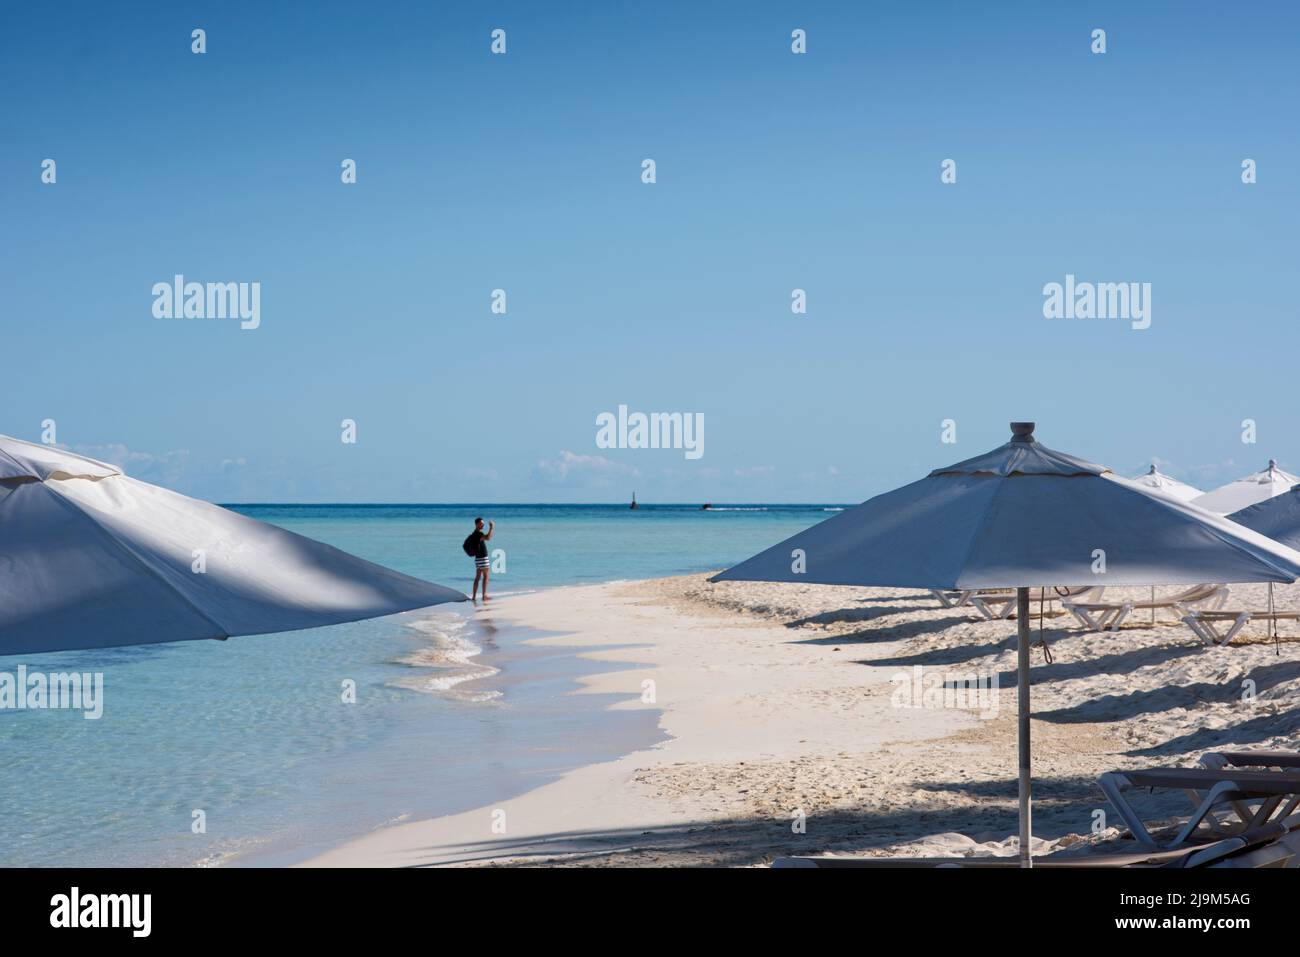 Las sombrillas blancas se abren en una playa tropical, y un turista en el fondo tomando una selfie Foto de stock